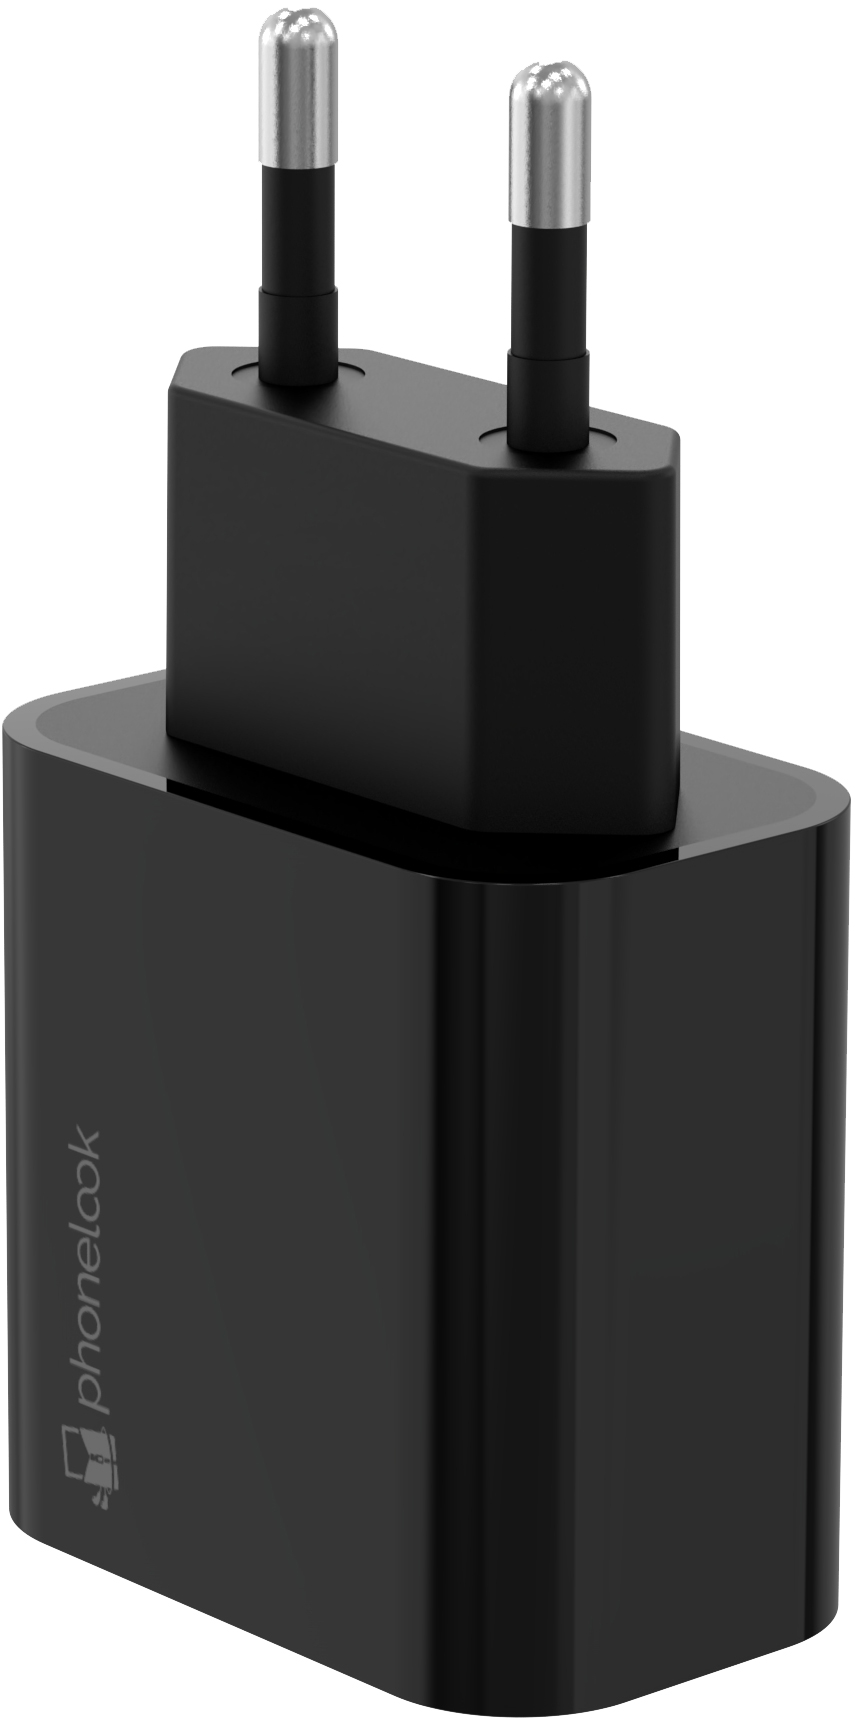 Chargeur Prise Adaptateur Secteur USB-C 20W 